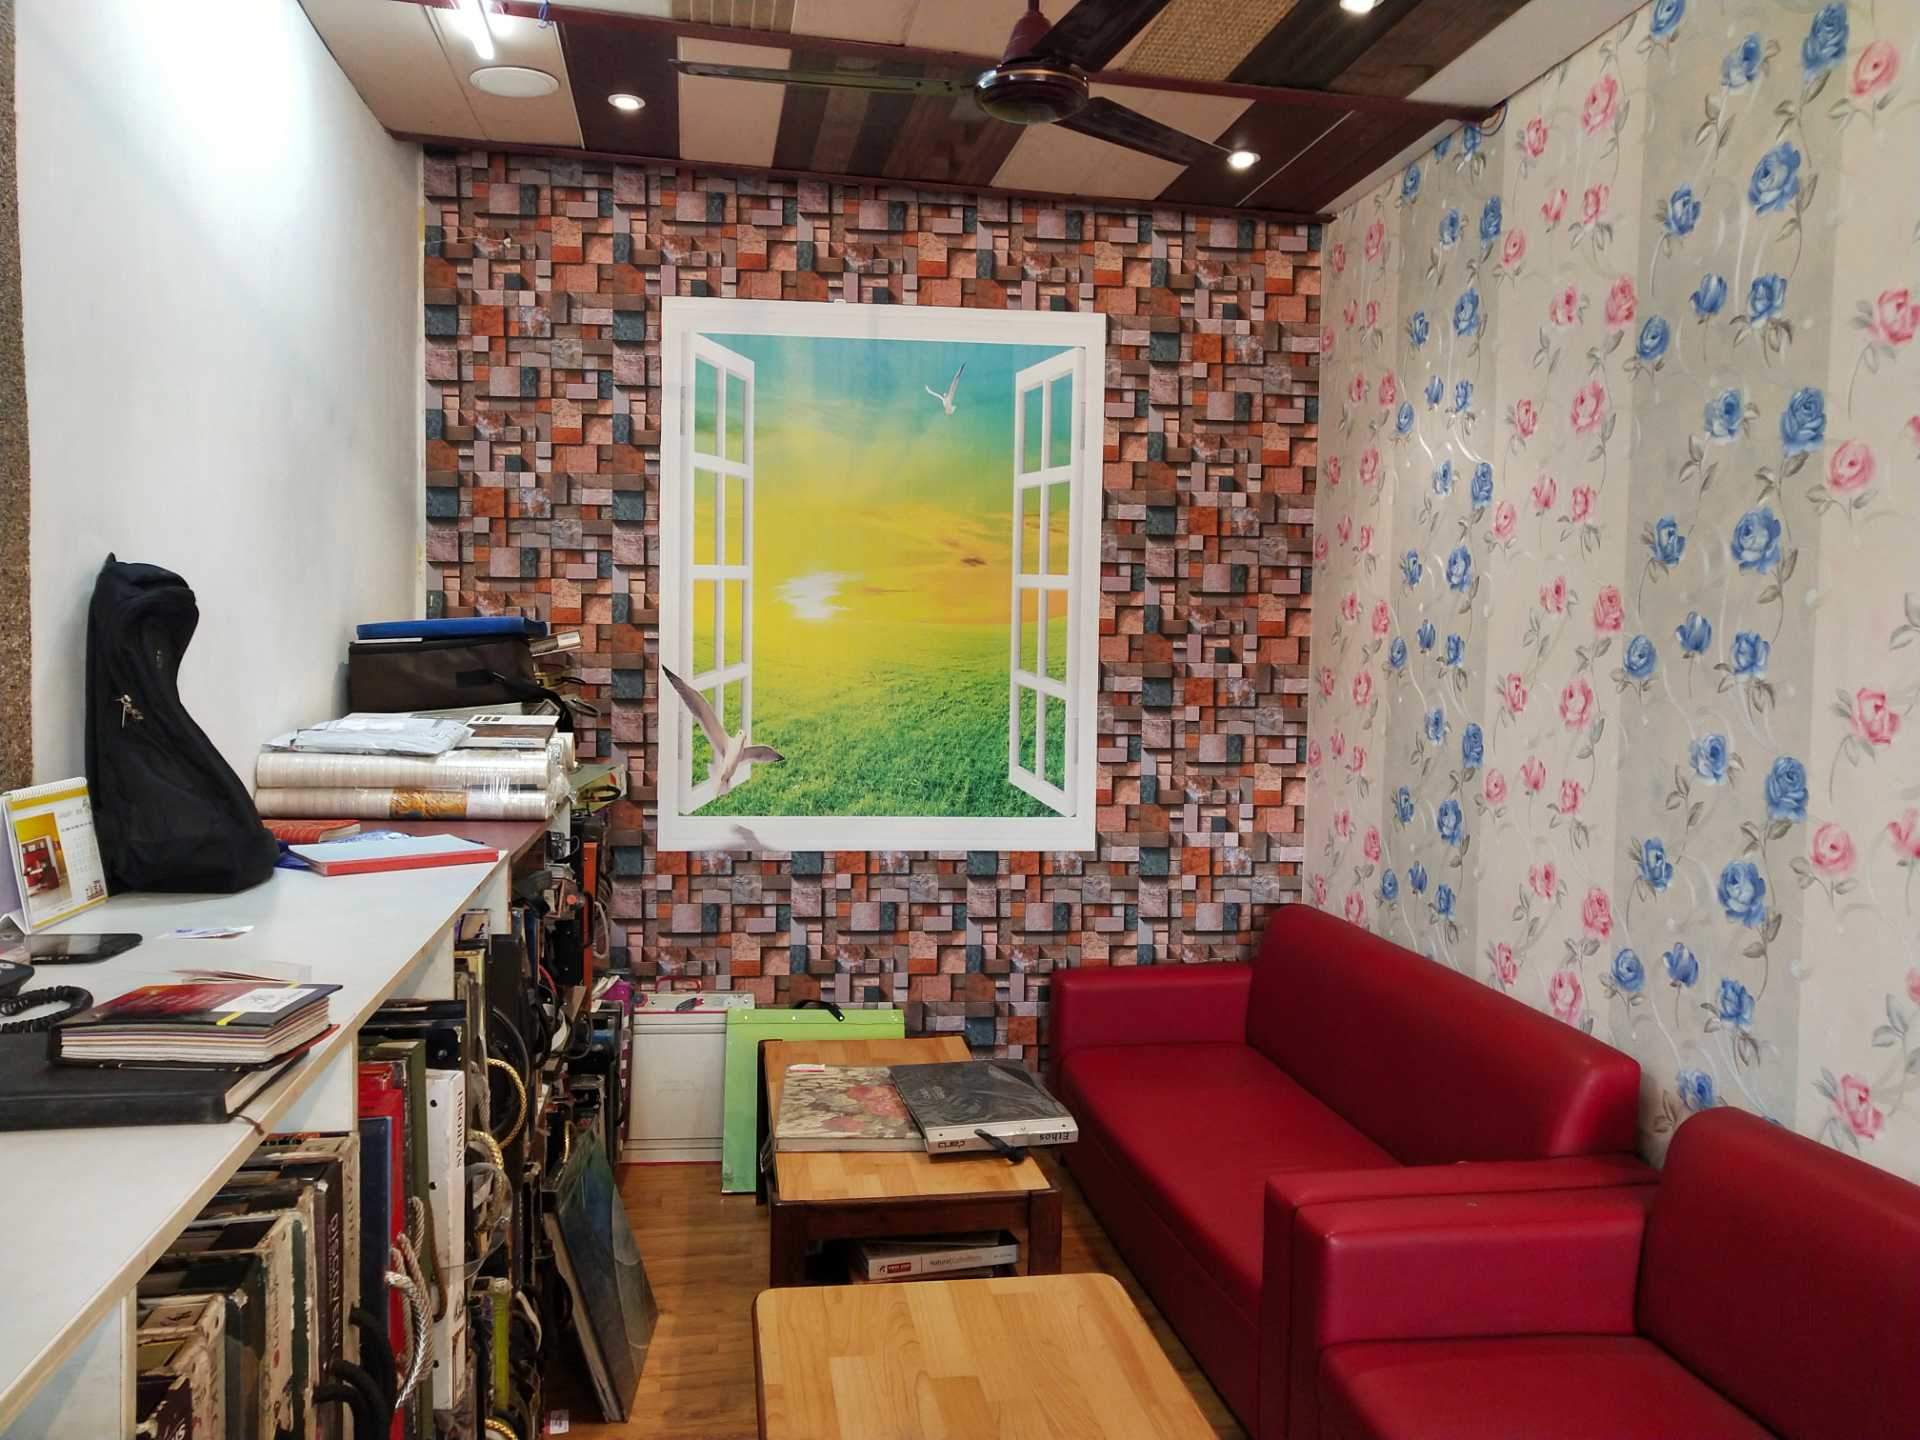 Wallpaper Studio, Sohna Road - Living Room , HD Wallpaper & Backgrounds